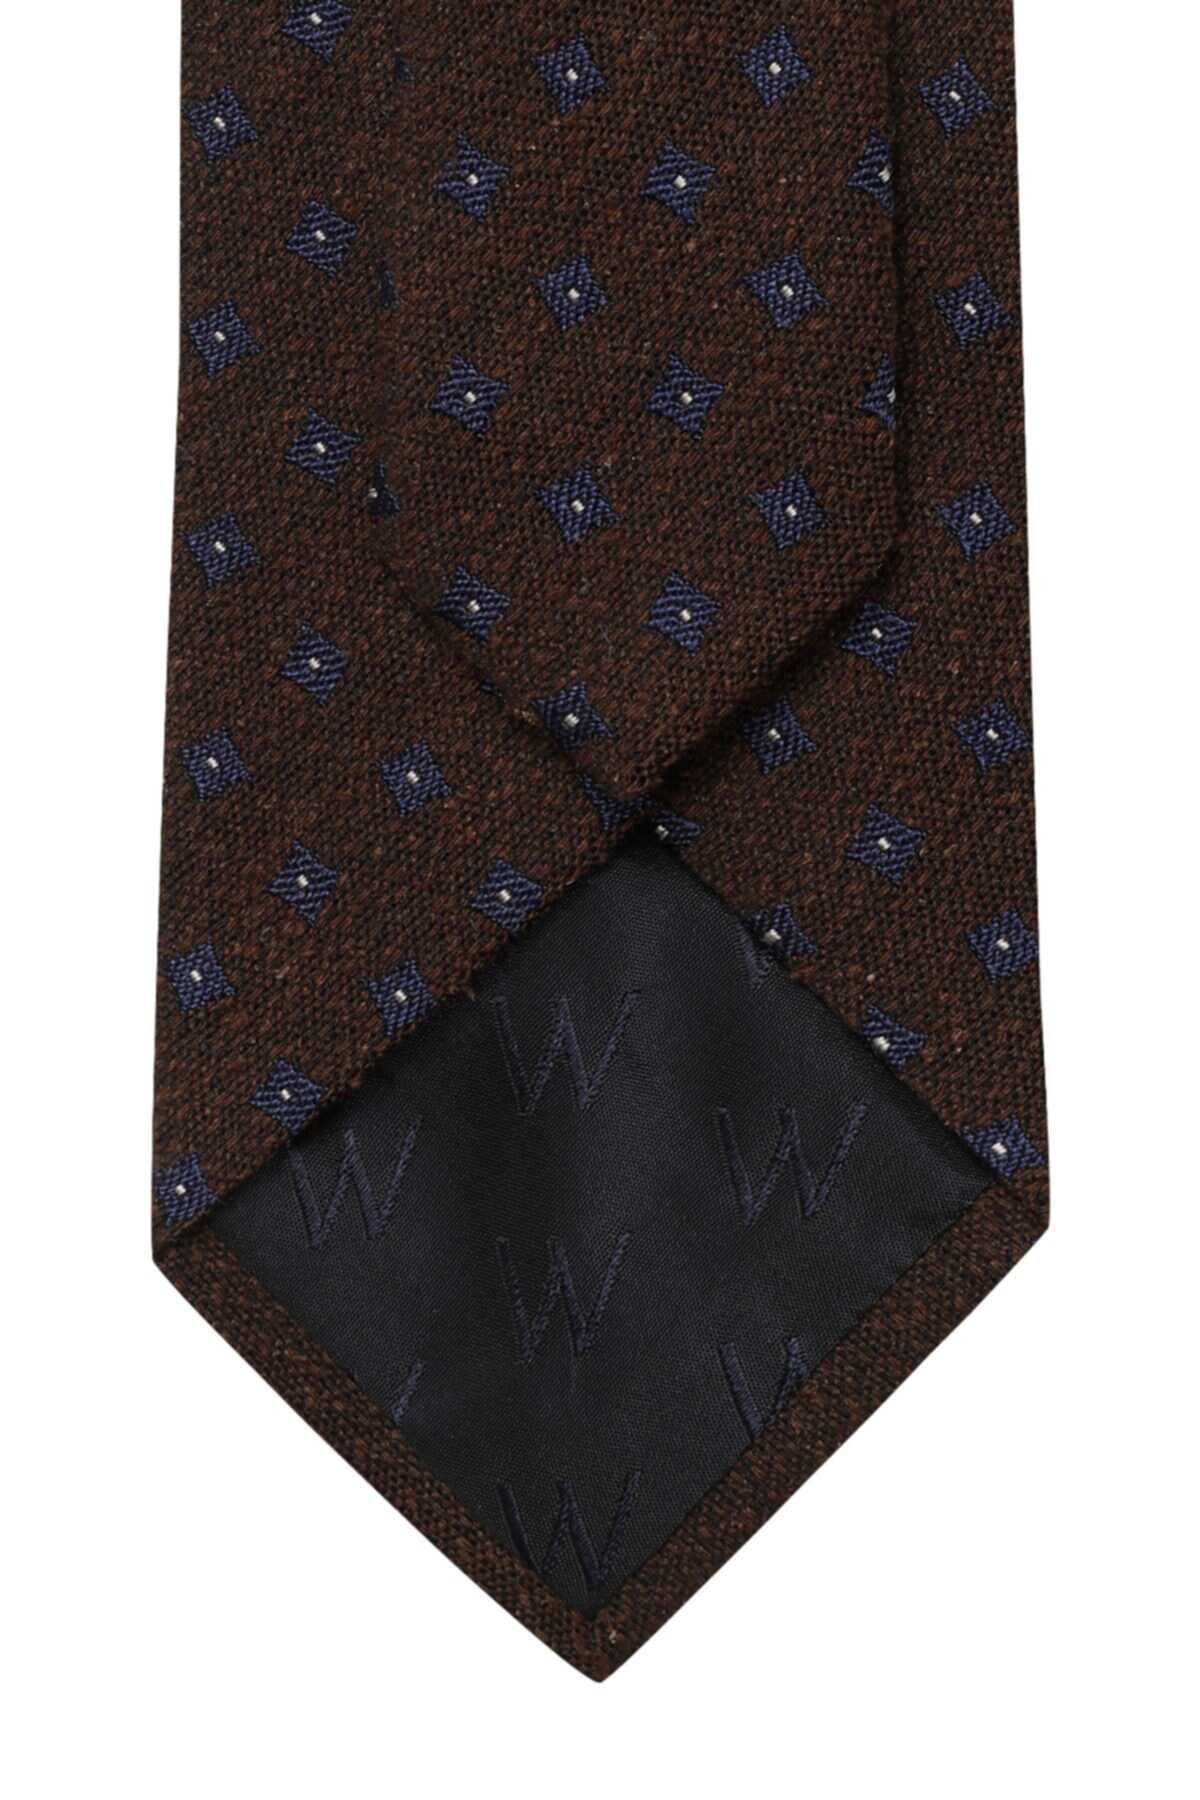 کراوات طرح دار مردانه قهوه ای برند W Collection